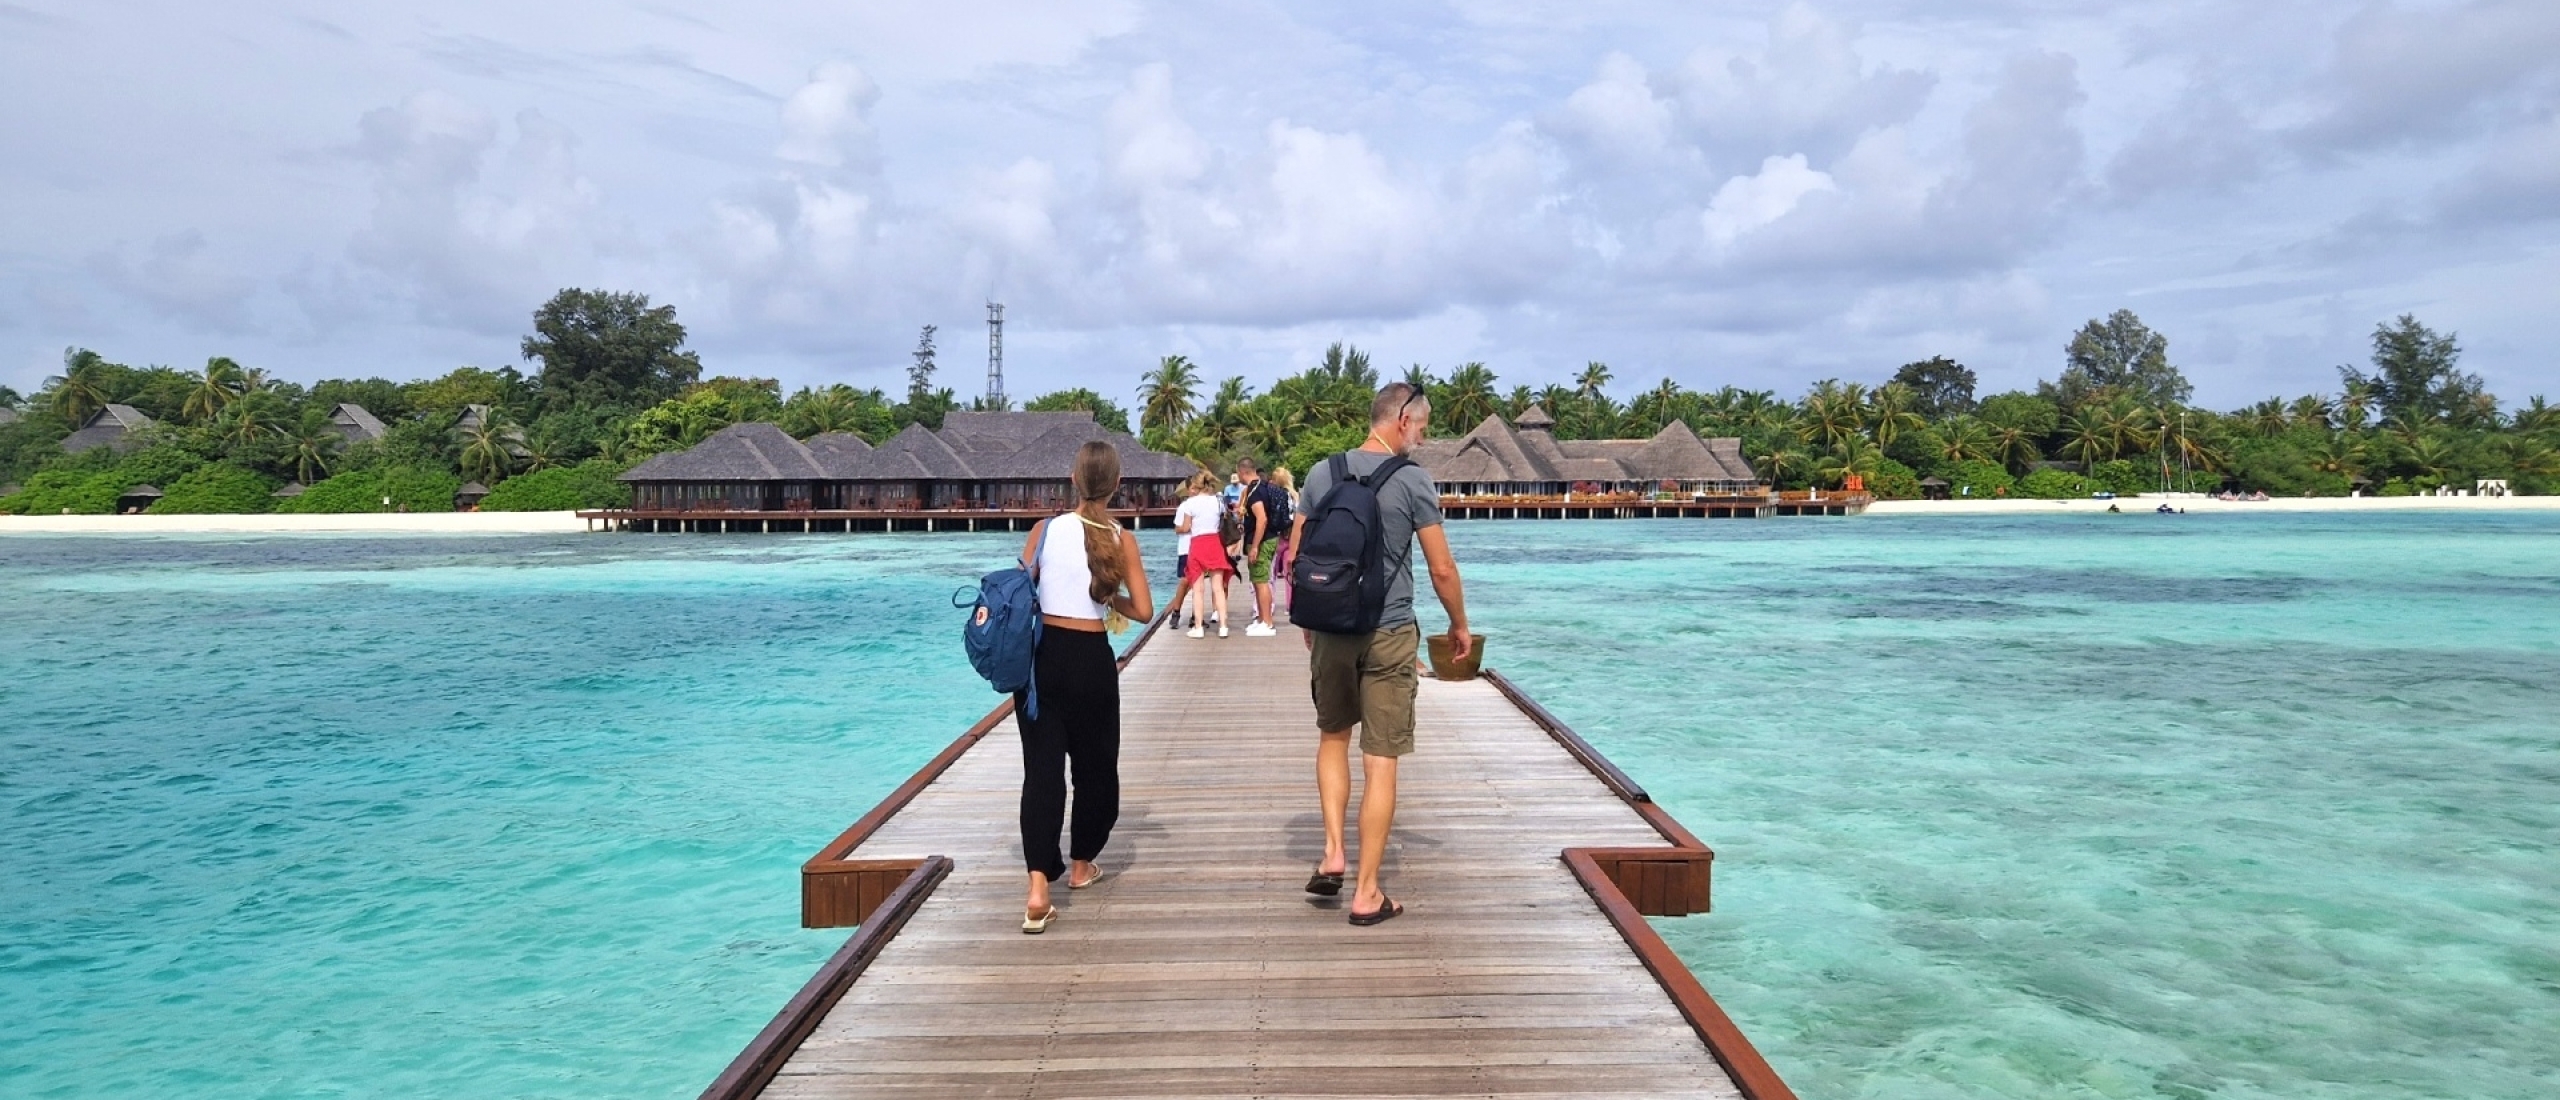 De Malediven voor beginners: eten, vervoer, bagage en meer!